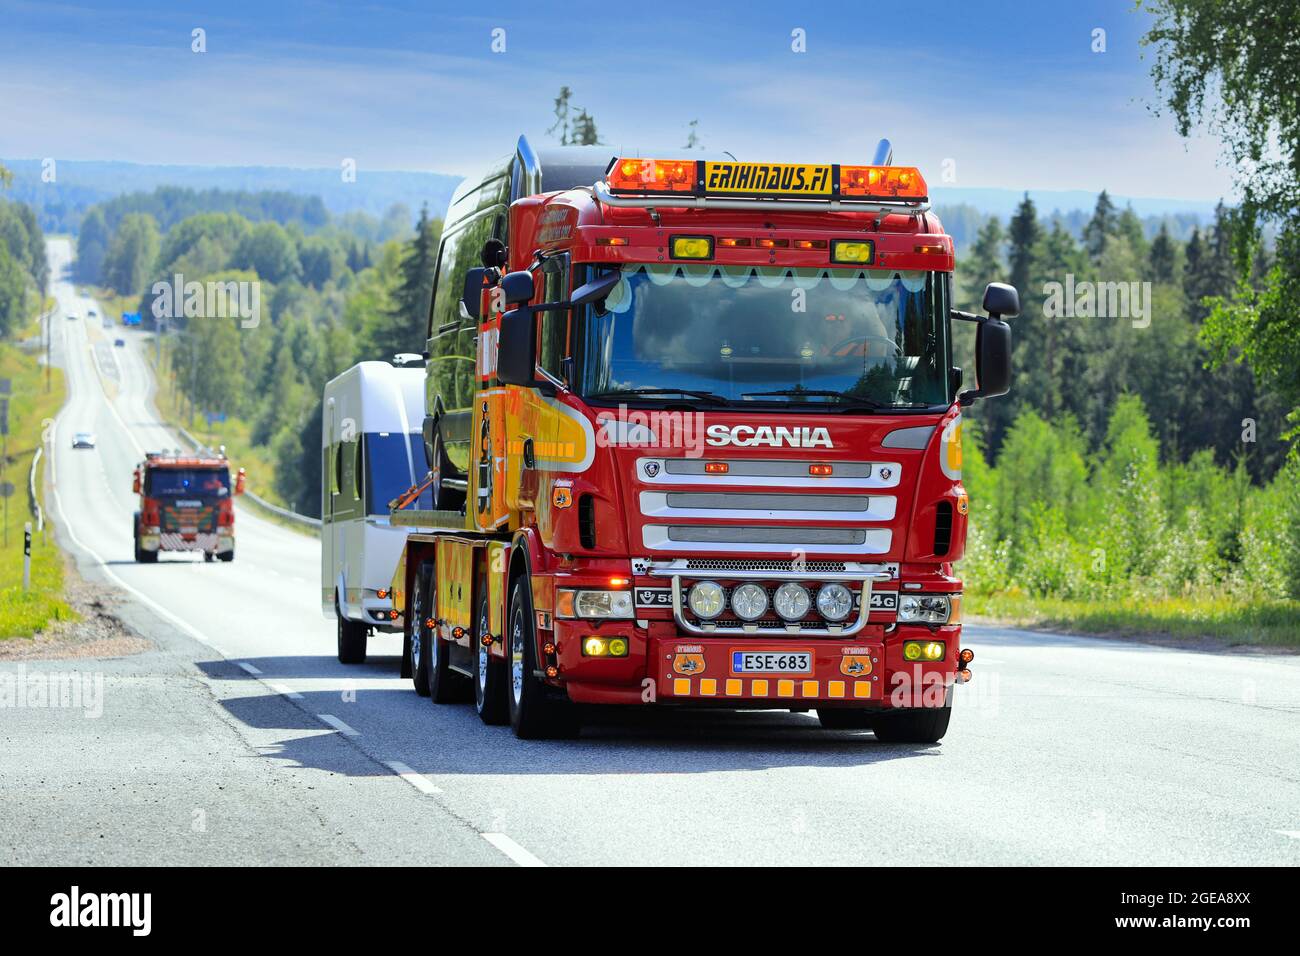 La cuarta entrega de 'Los irresistibles de Scania